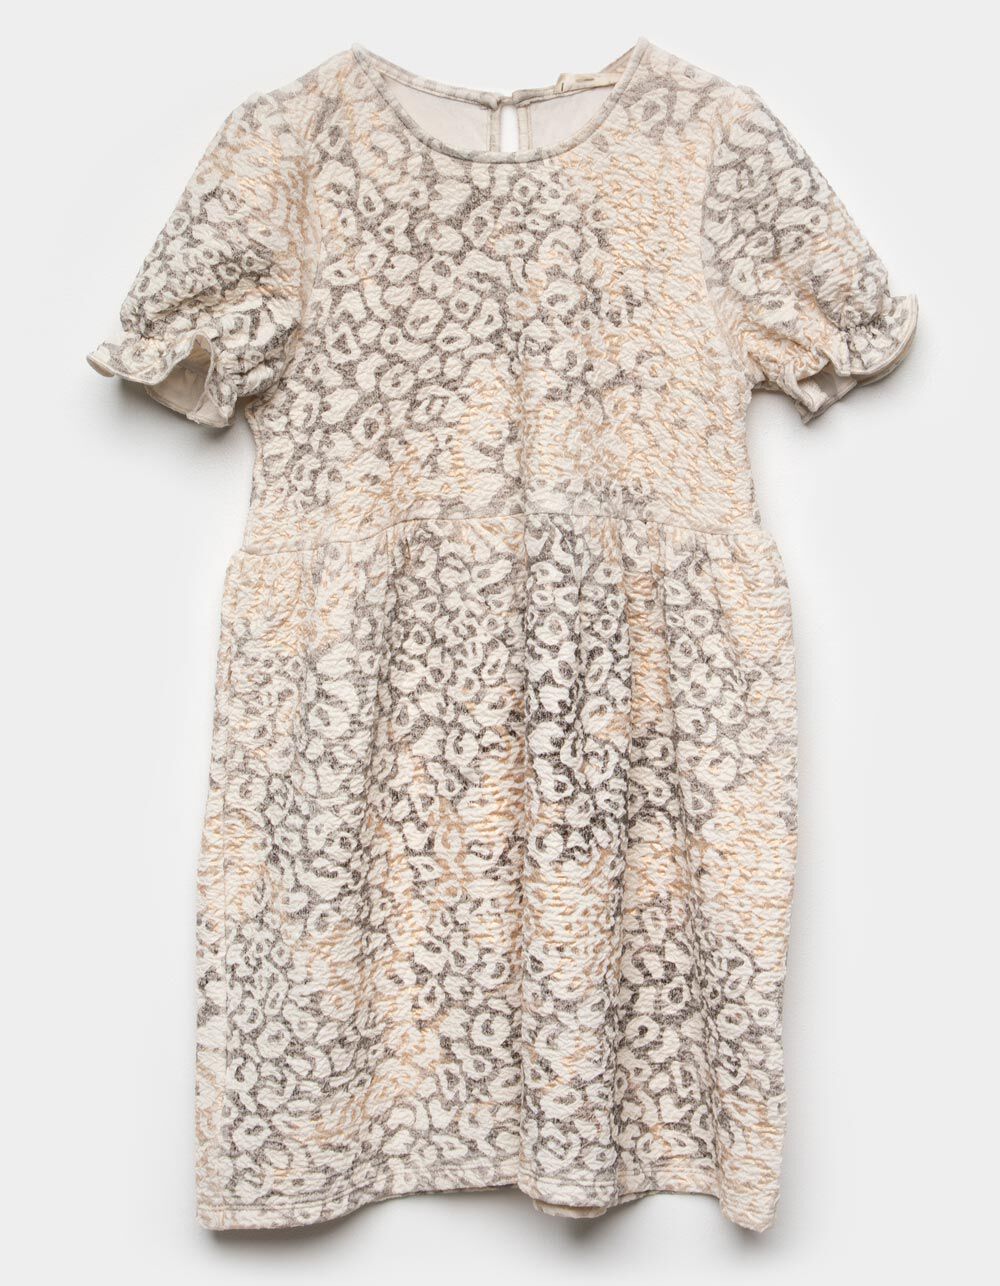 HAYDEN Leopard Puff Sleeve Girls Dress - CREAM COMBO | Tillys